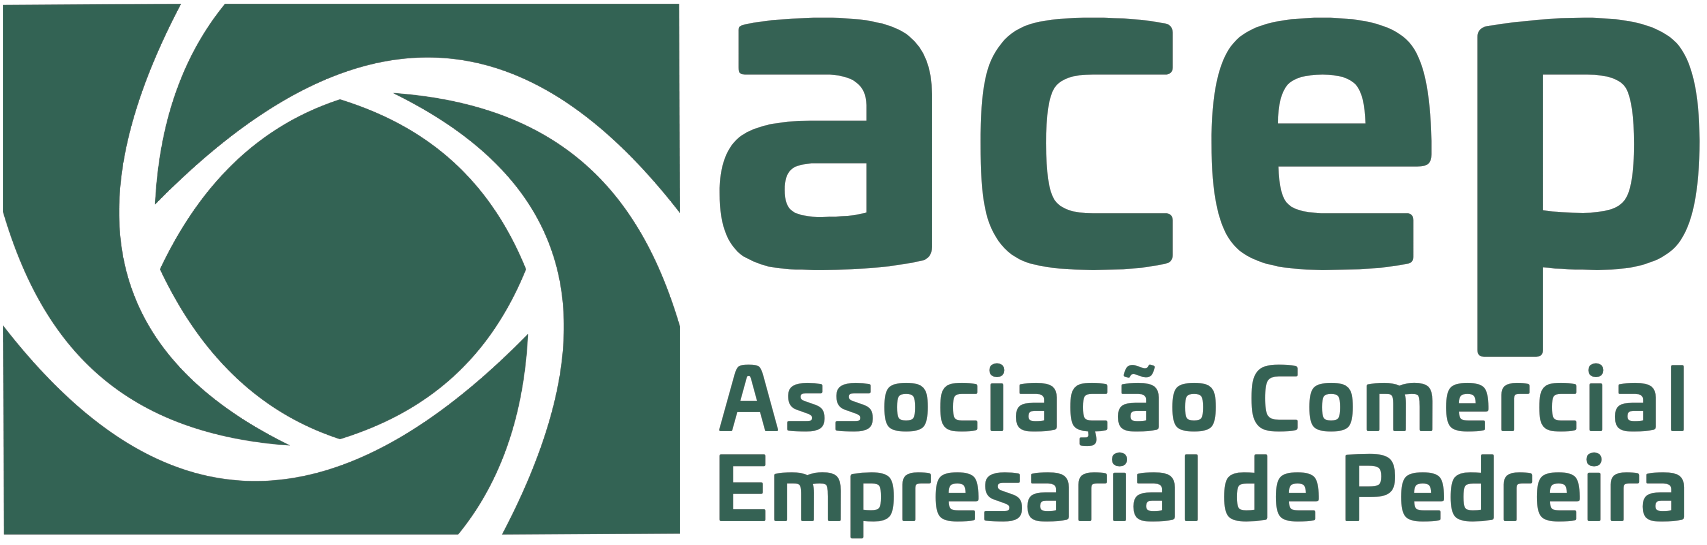 ACEP - Associação Comercial e Empresarial de Pedreira